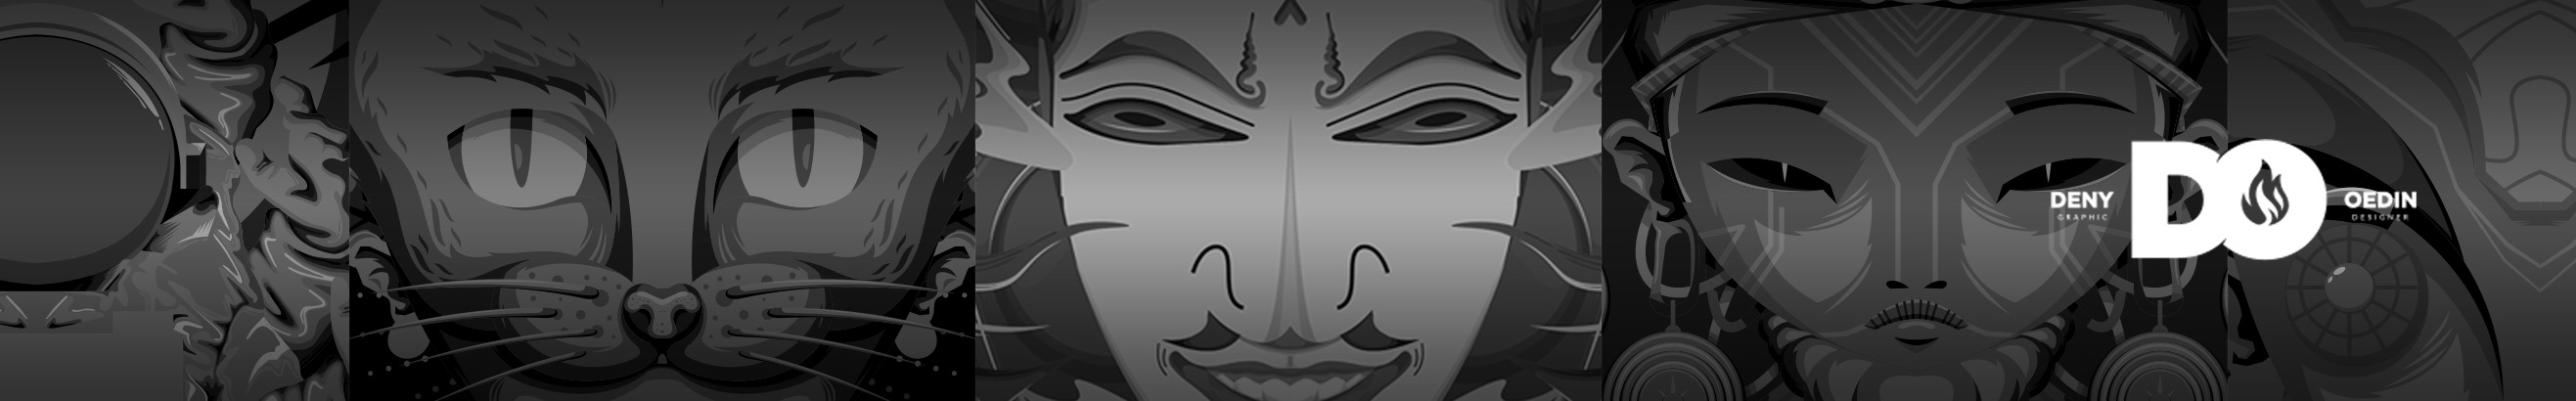 Profil-Banner von Deny Oedin